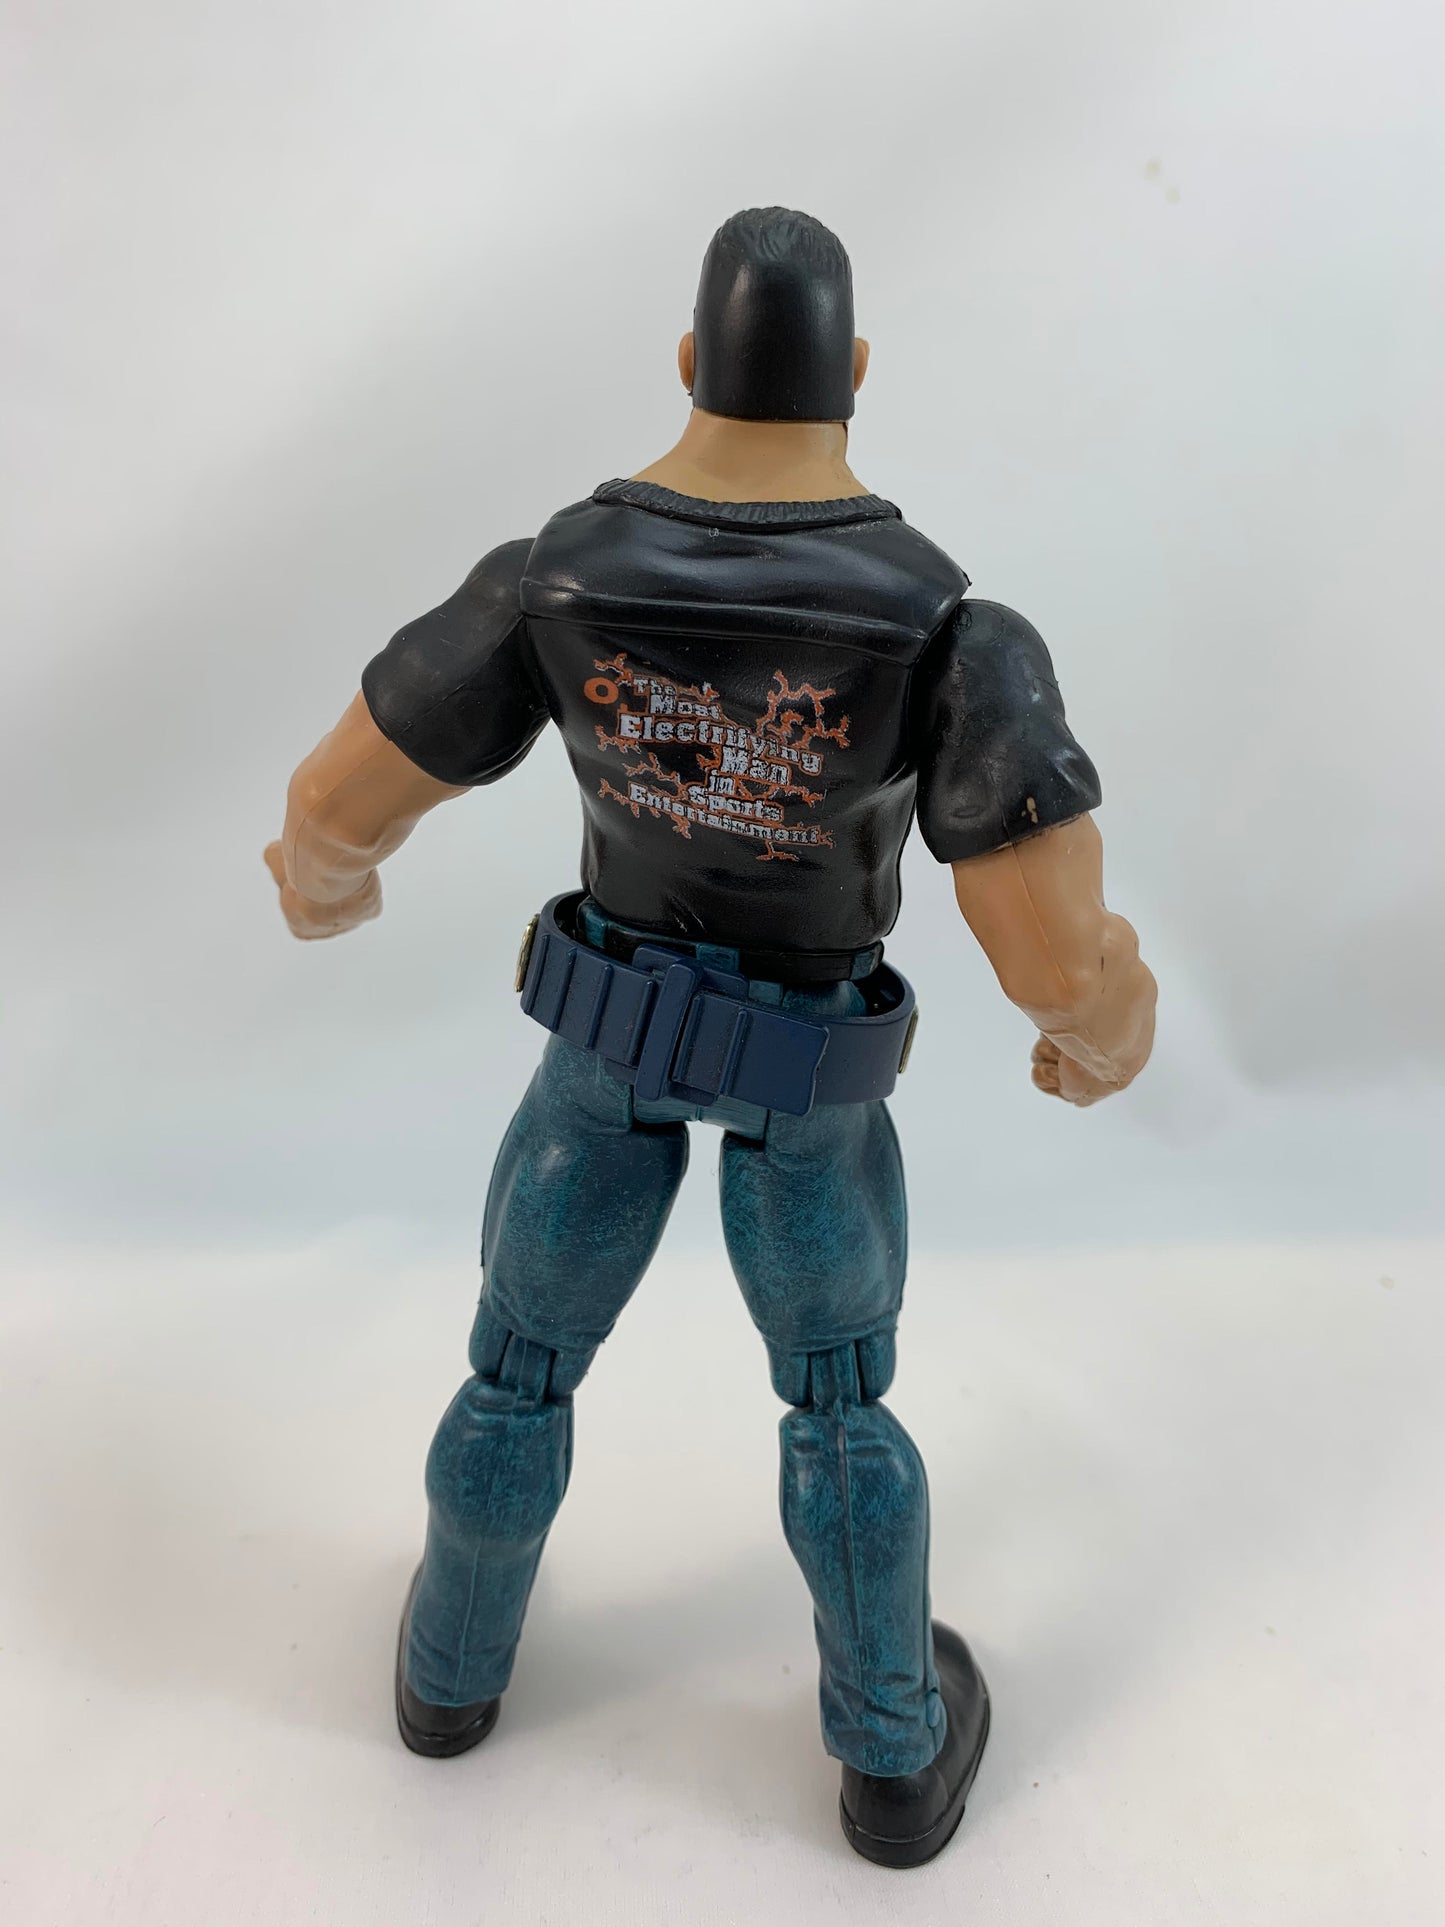 Jakks Pacific The Rock Wrestling Action Figure Titan Tron Live 1999 with title belt - Loose Action Figure